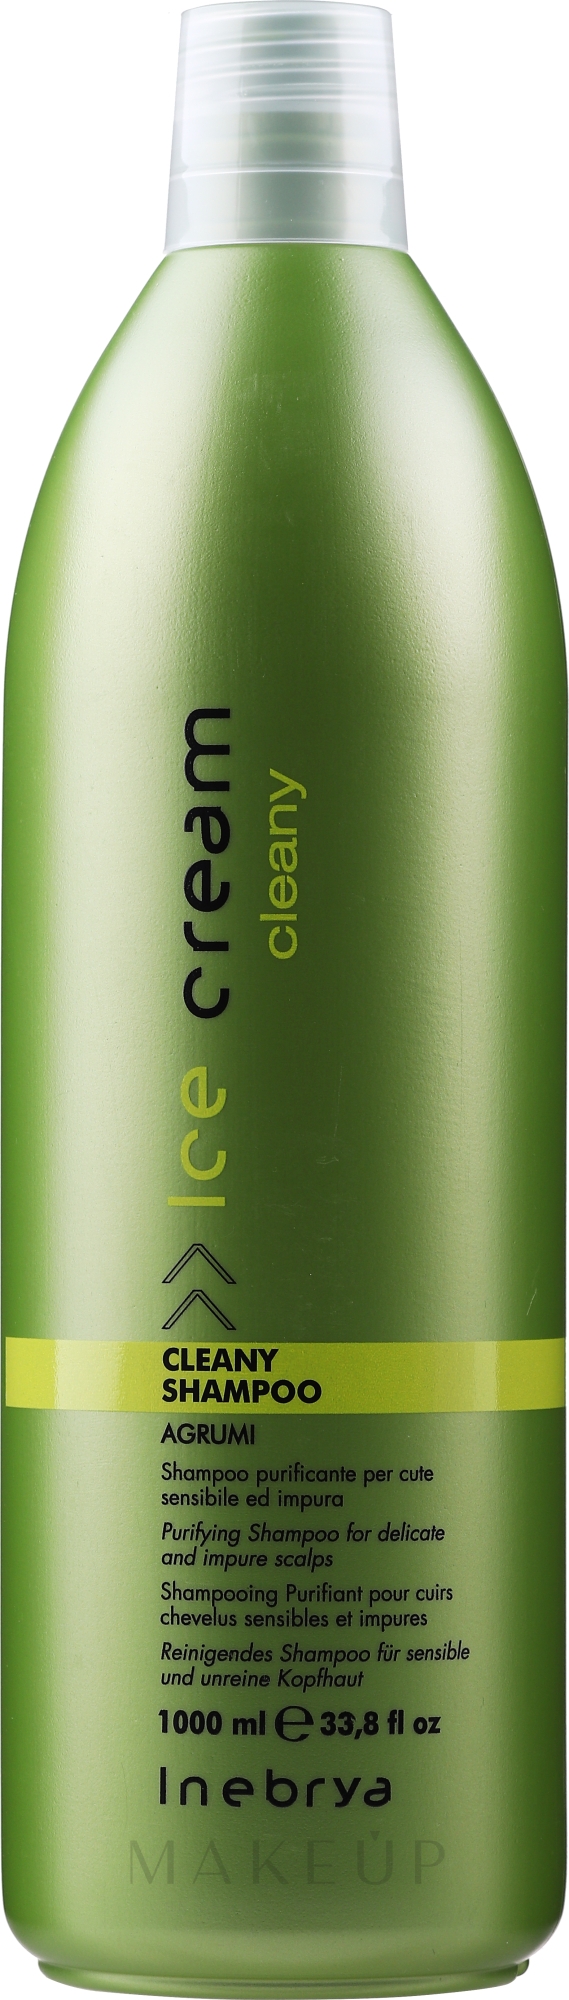 Reinigendes Shampoo für sensible und unreine Kopfhaut - Inebrya Cleany Shampoo — Bild 1000 ml